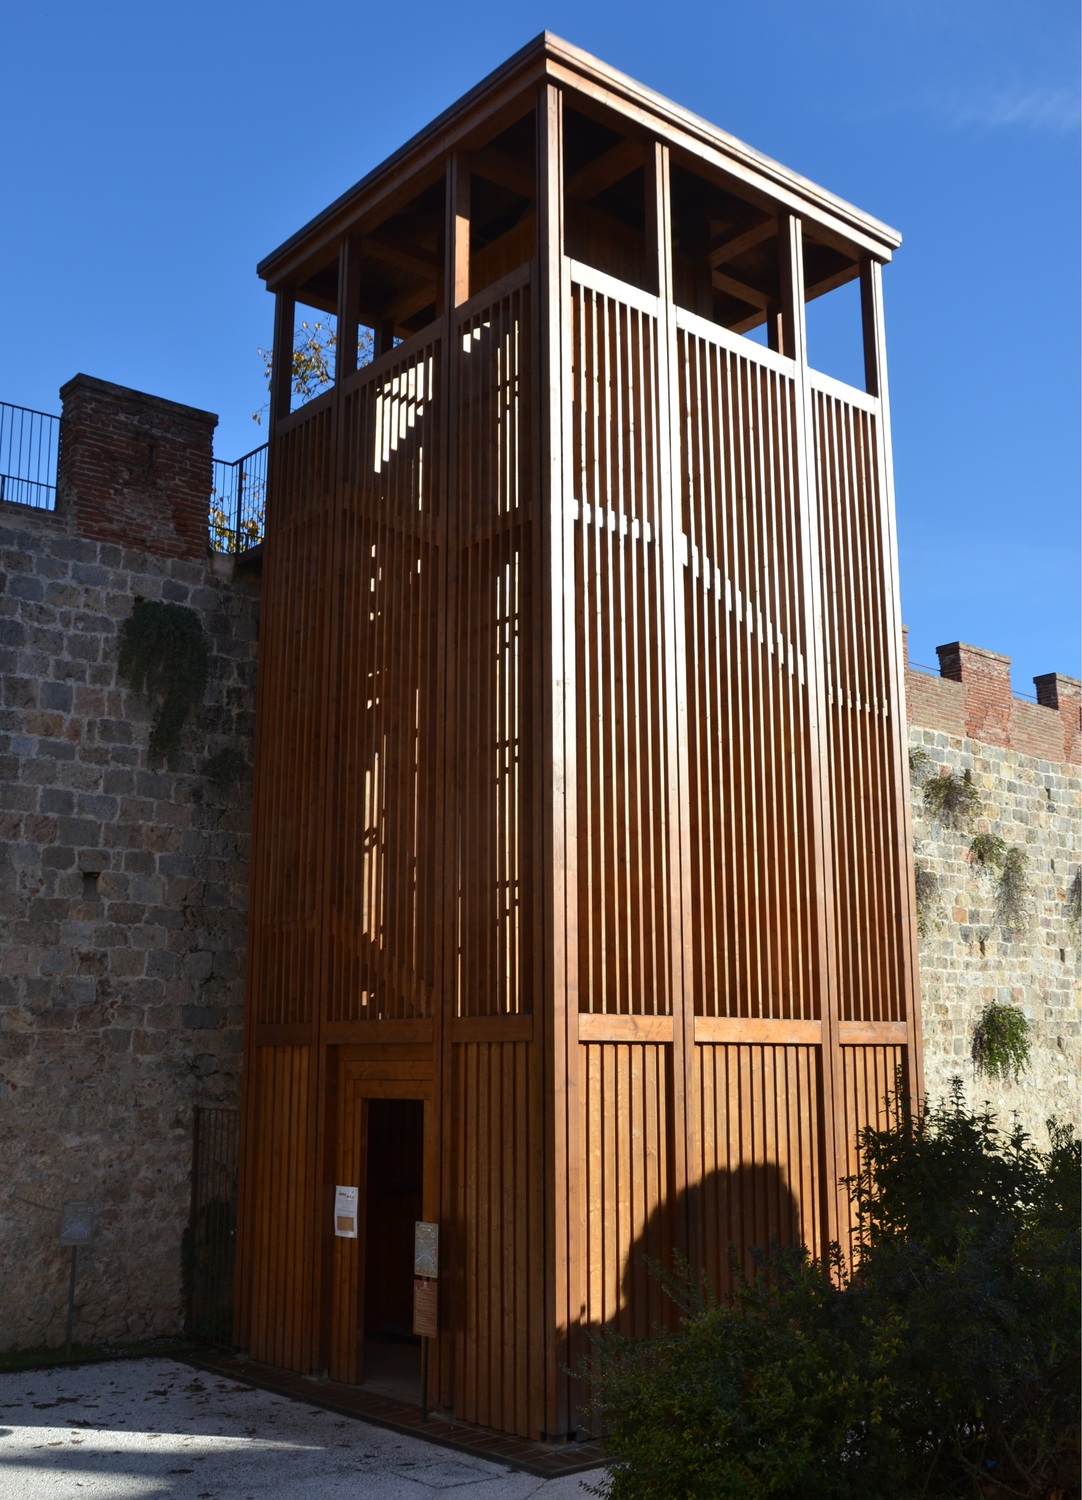 Torre di Legno ( da Mura di Pisa, www.muradipisa.it/)